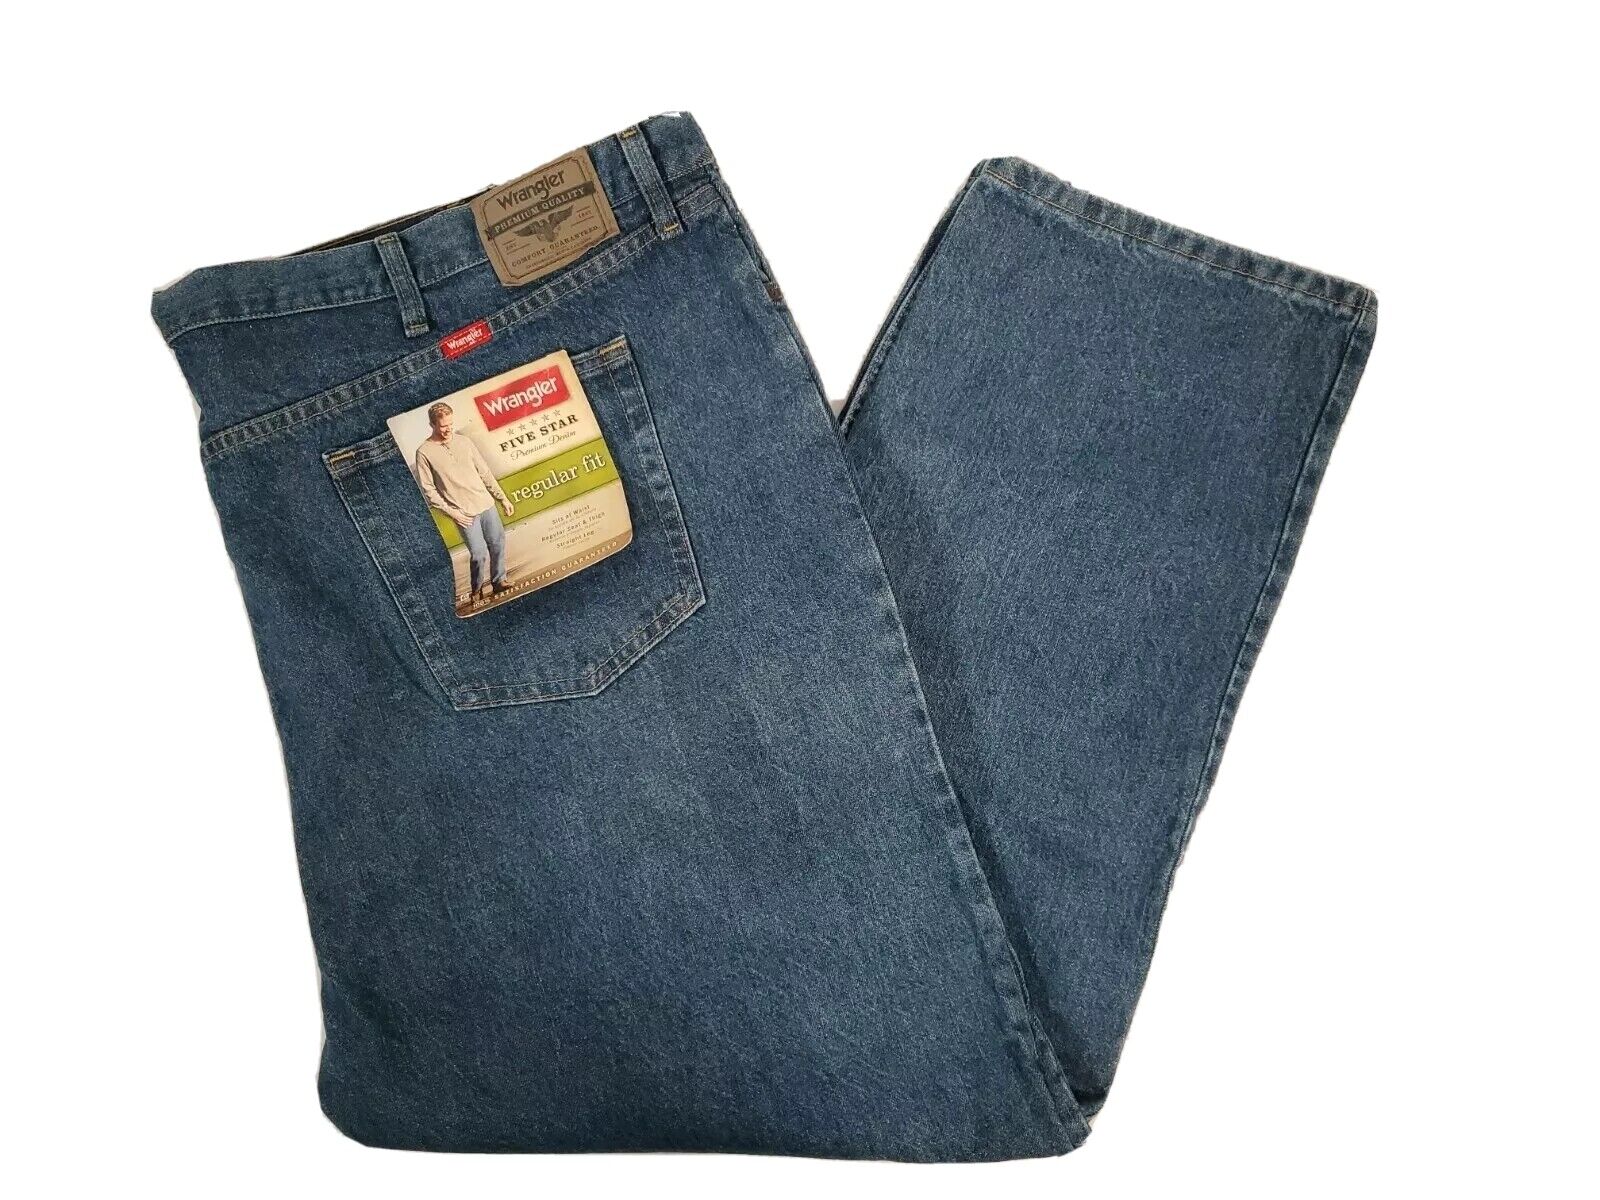 Wrangler Jeans 54x30 Five Star Premium Denim Regular Fit Straight Leg NEW |  eBay